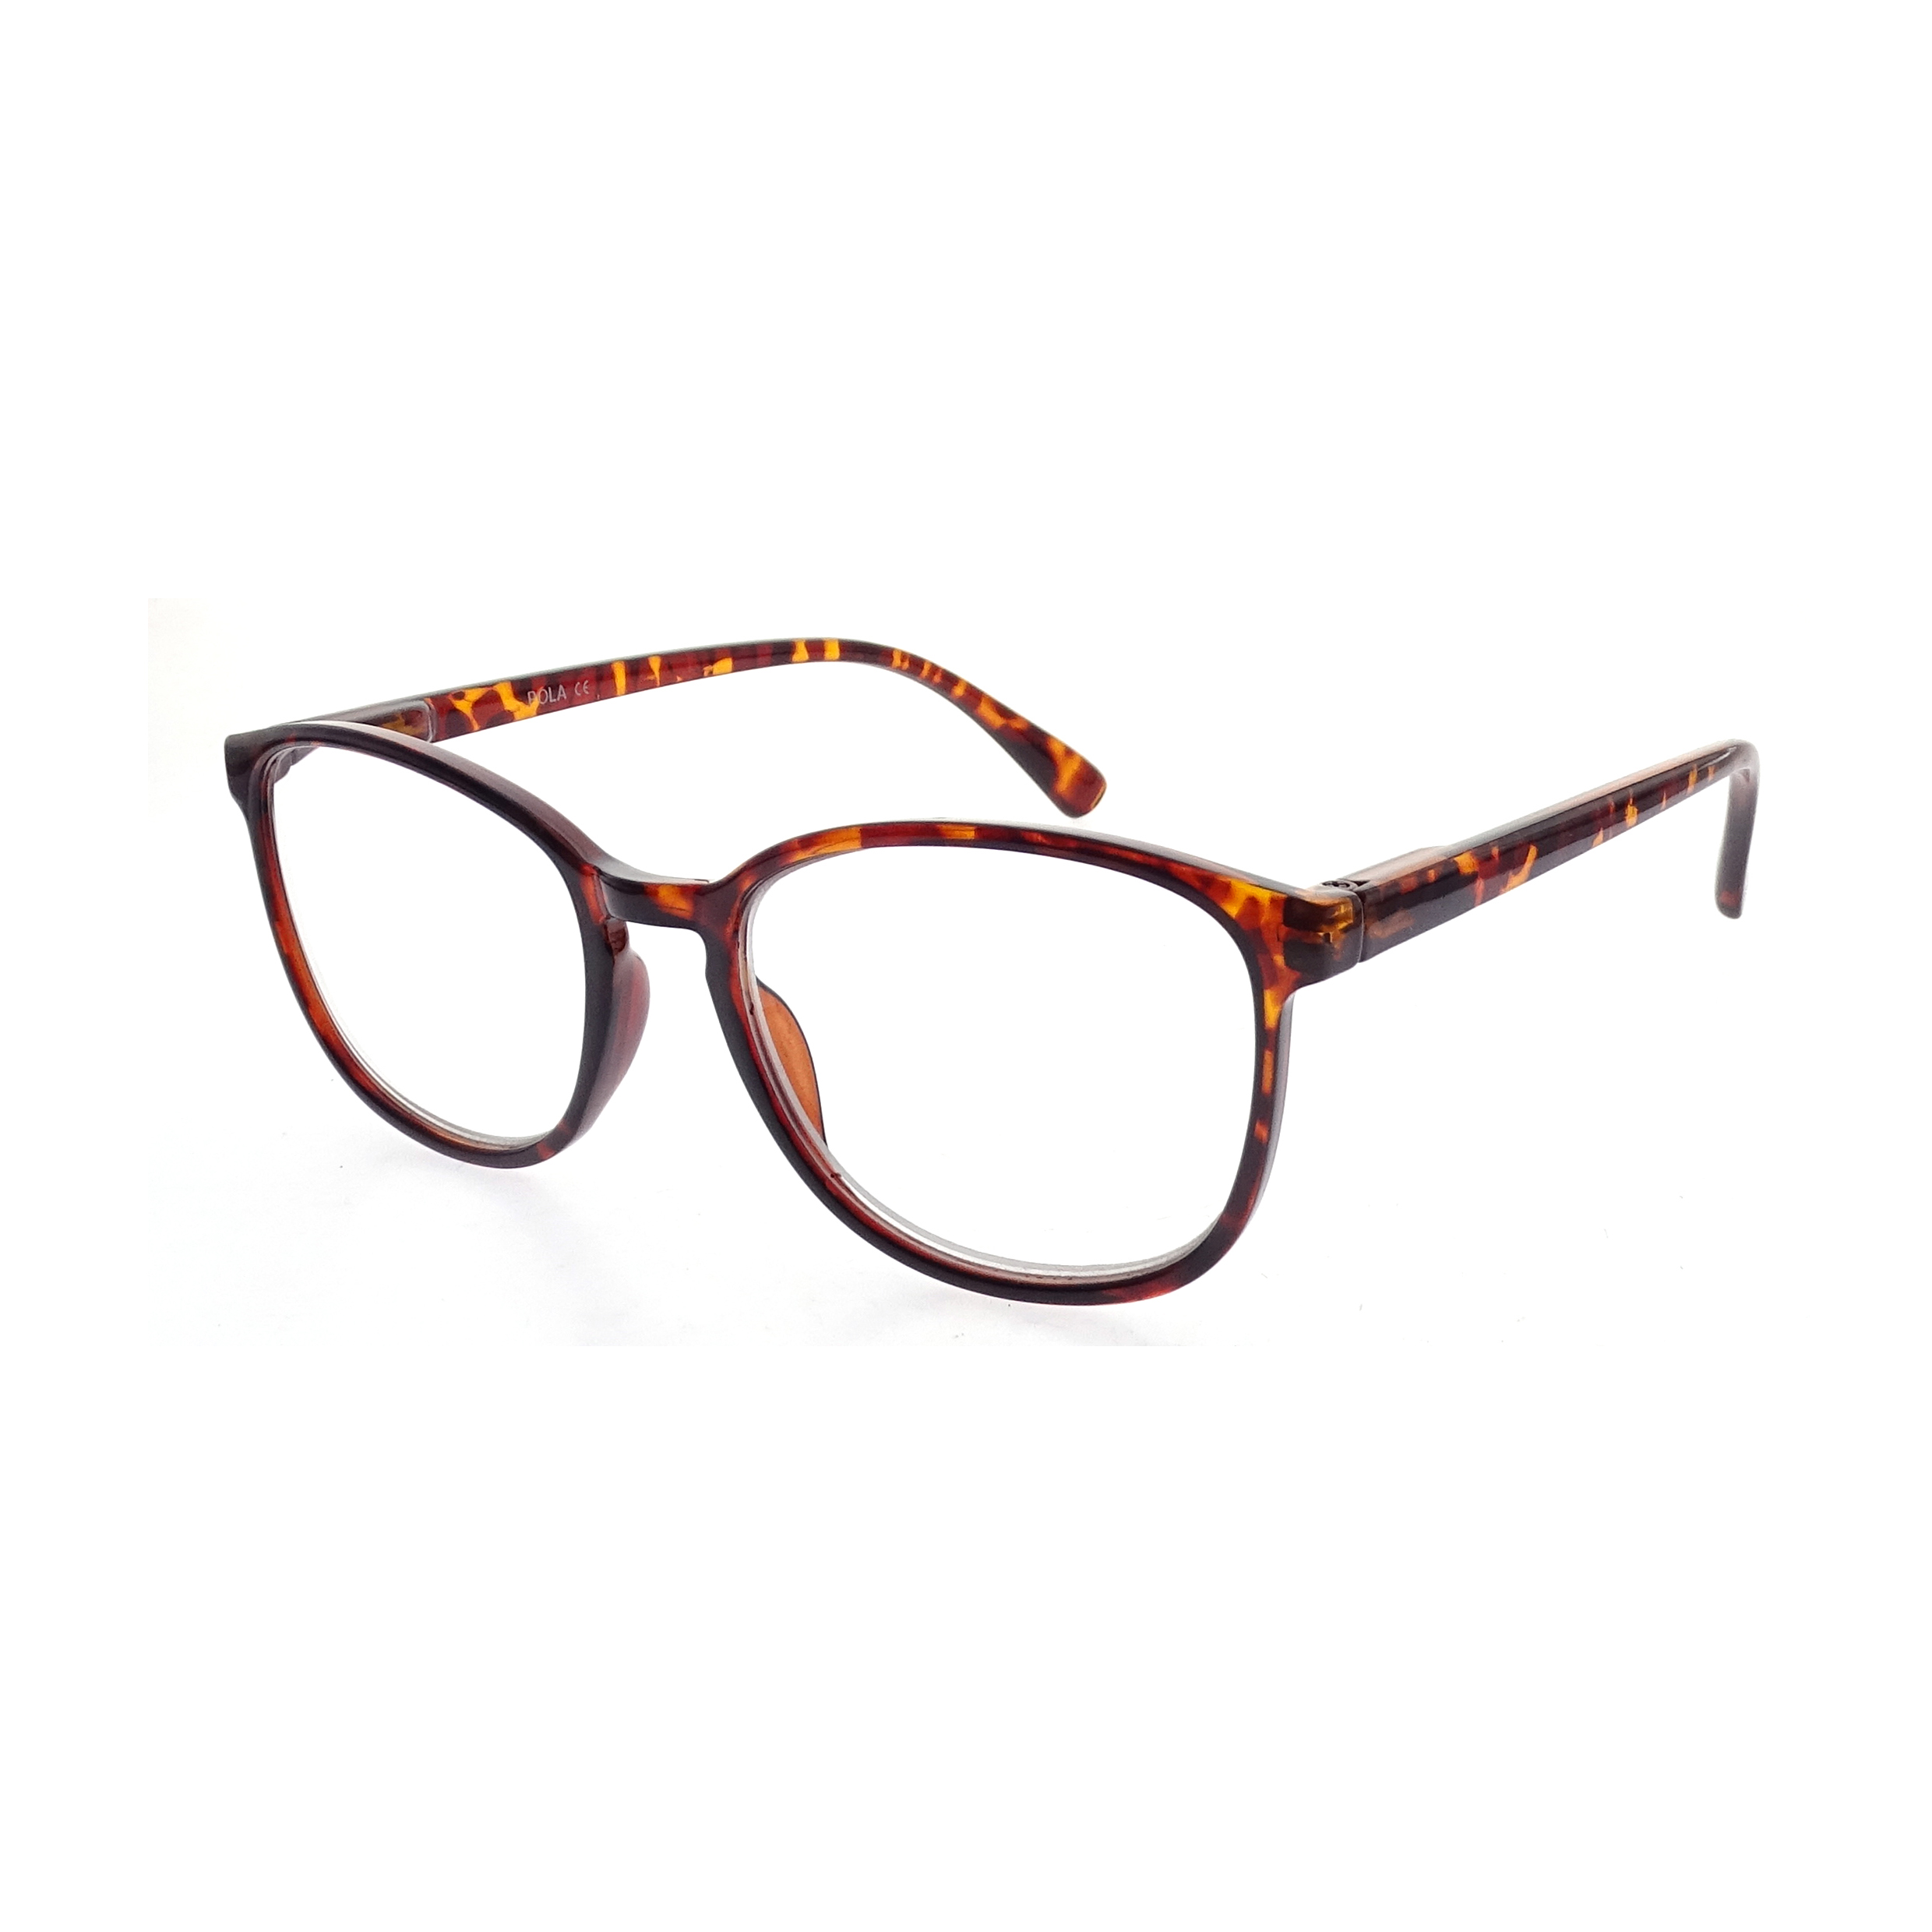 Nuevo diseño de montura óptica, gafas de moda, gafas de lectura para hombre y mujer, LR-P5817